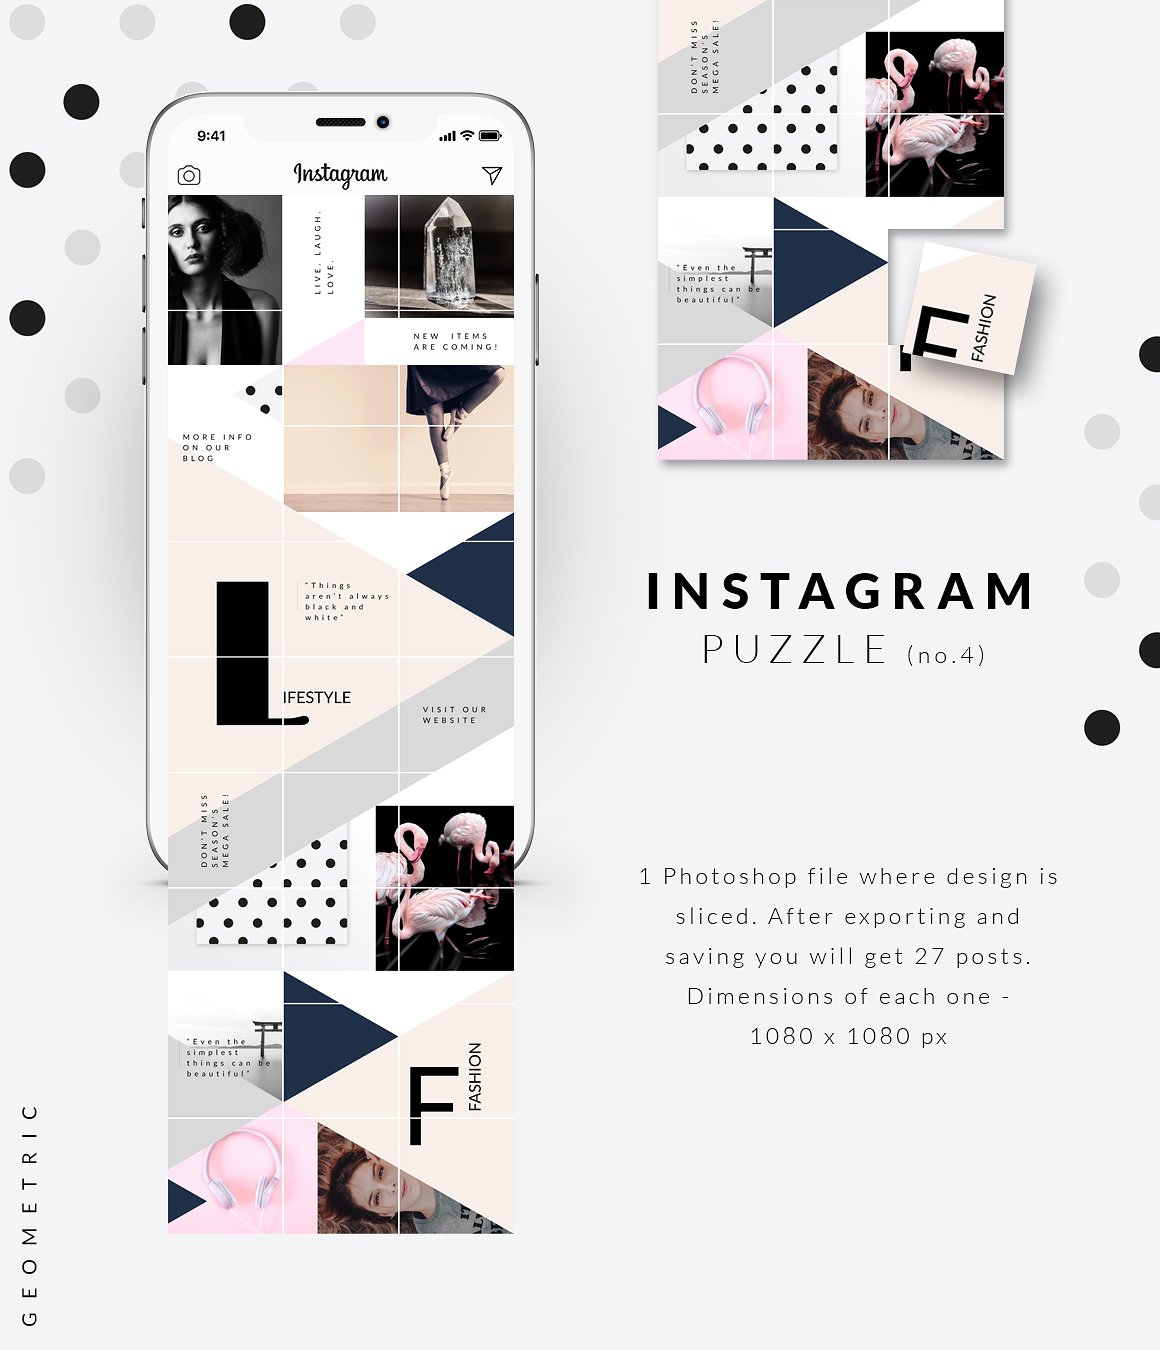 时尚高端几何形状布局的Instagram模板素材库精选 Instagram PUZZLE template -Geometric [psd]插图(4)